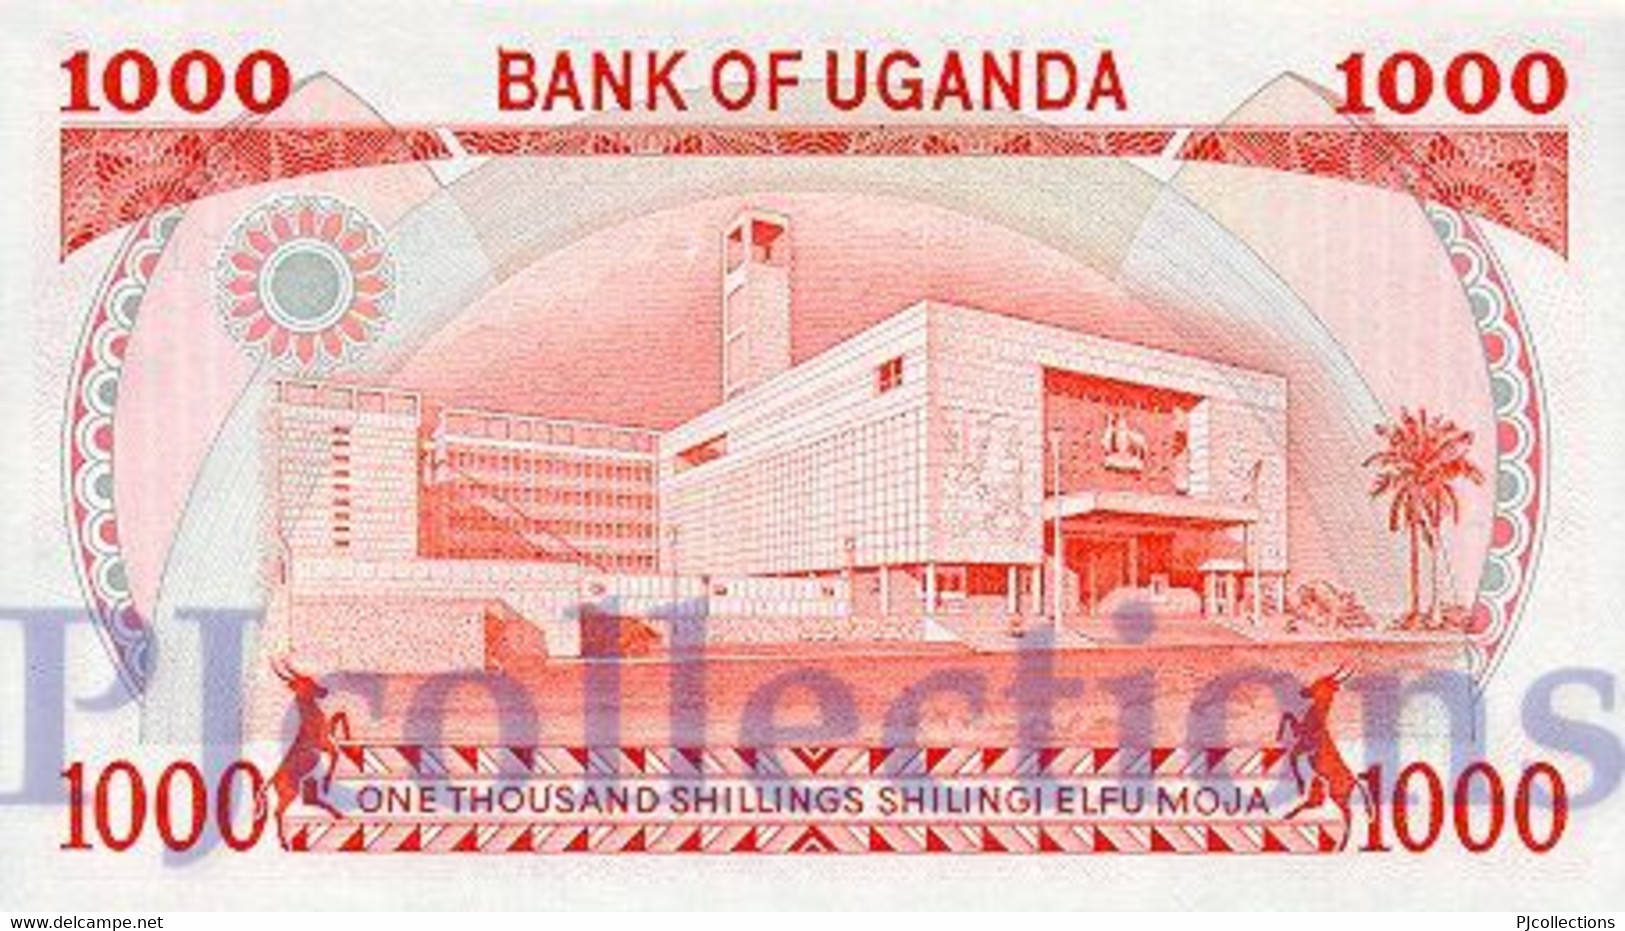 UGANDA 1000 SHILLINGS 1986 PICK 26 UNC - Uganda